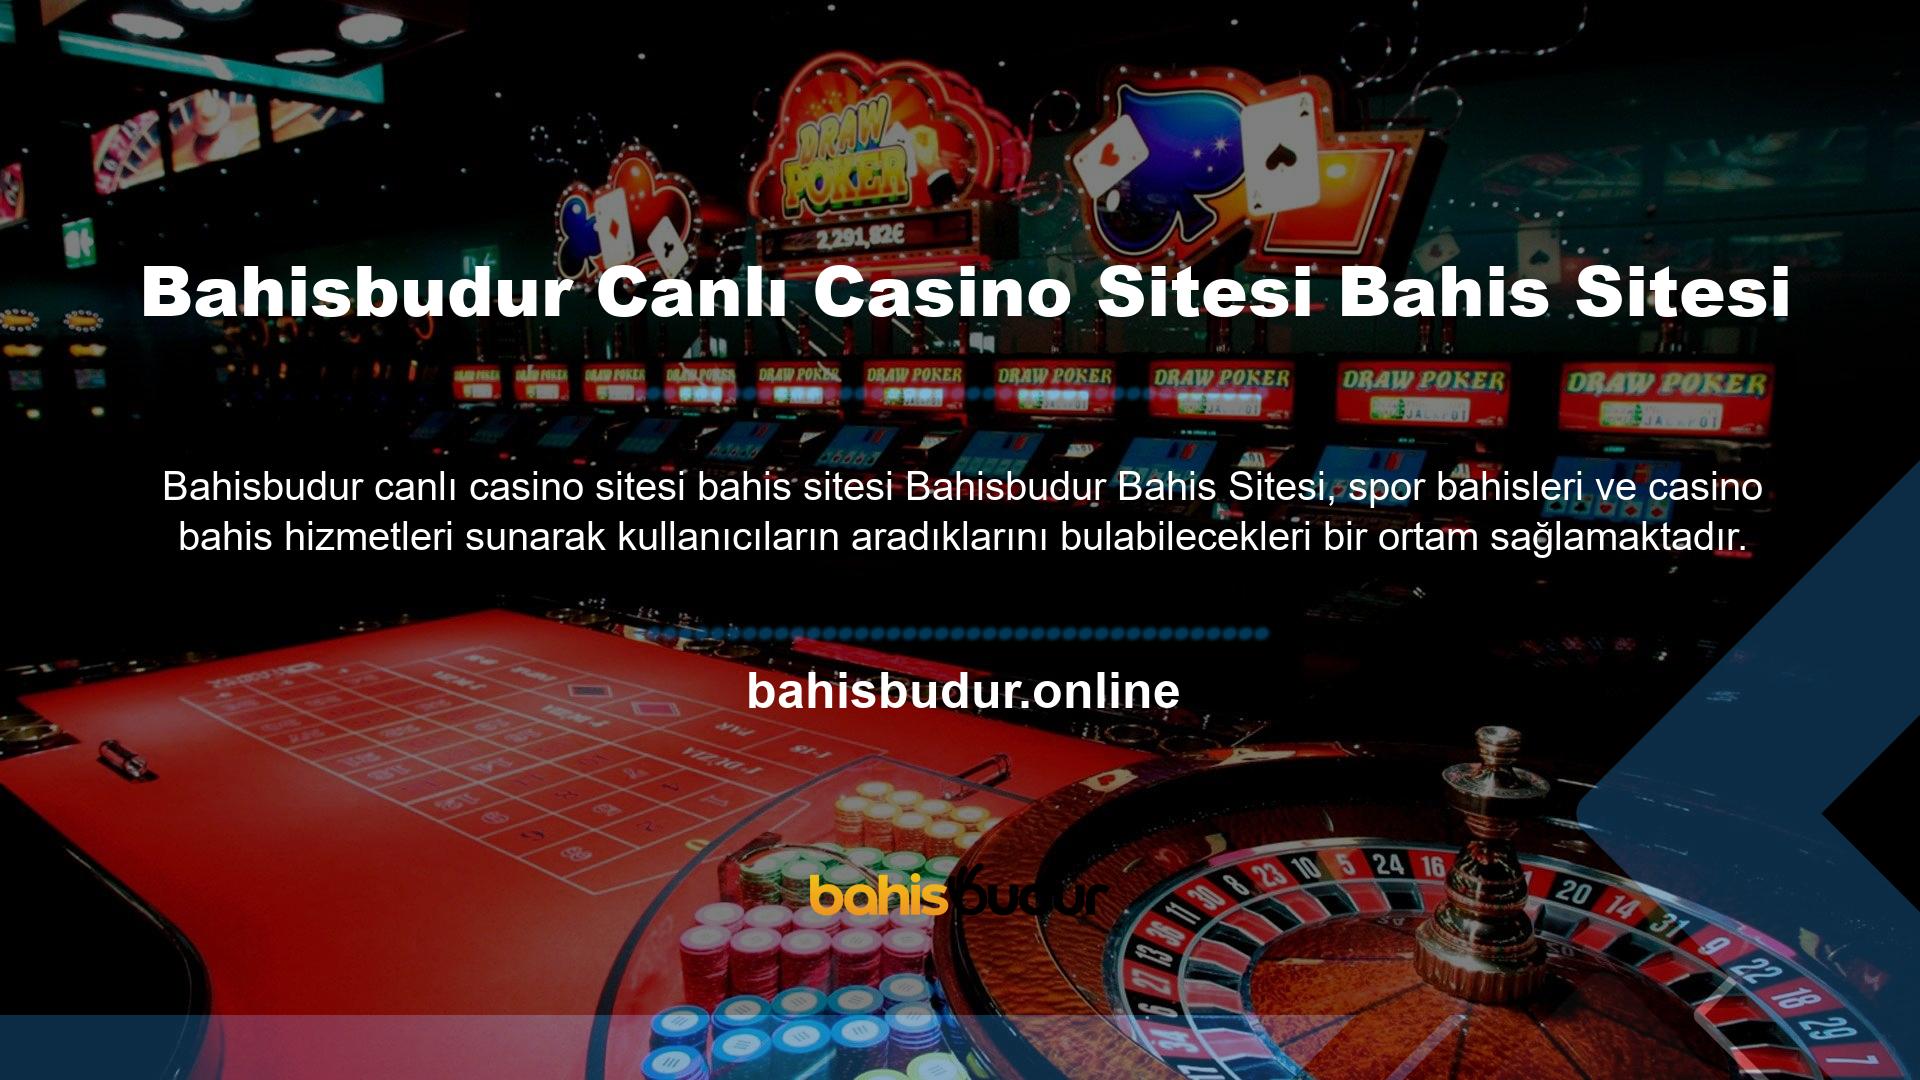 Slot makineleri, Türk casino oyunlarının en popüler ve en çok zaman alan segmenti olduğundan, Bahisbudur yönetimi bu segmente özellikle önem vermektedir